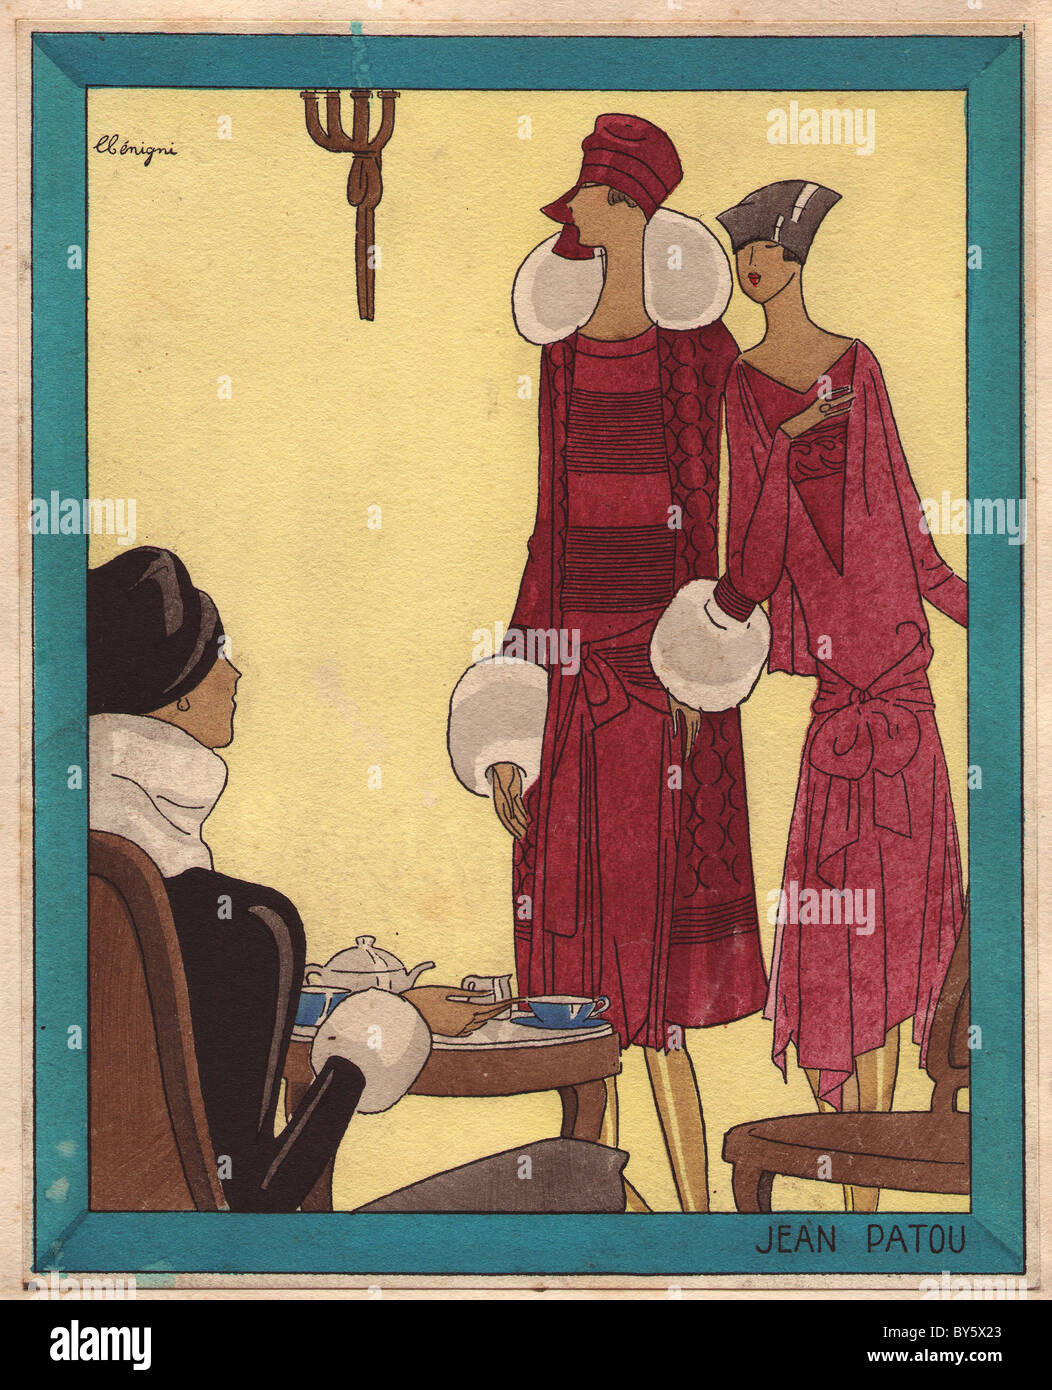 Frau trinkt Tee schwarzer samt Mantel getrimmt mit weißem Fell, Frauen tragen rote Kleider und Turban Hüte stehen. Stockfoto